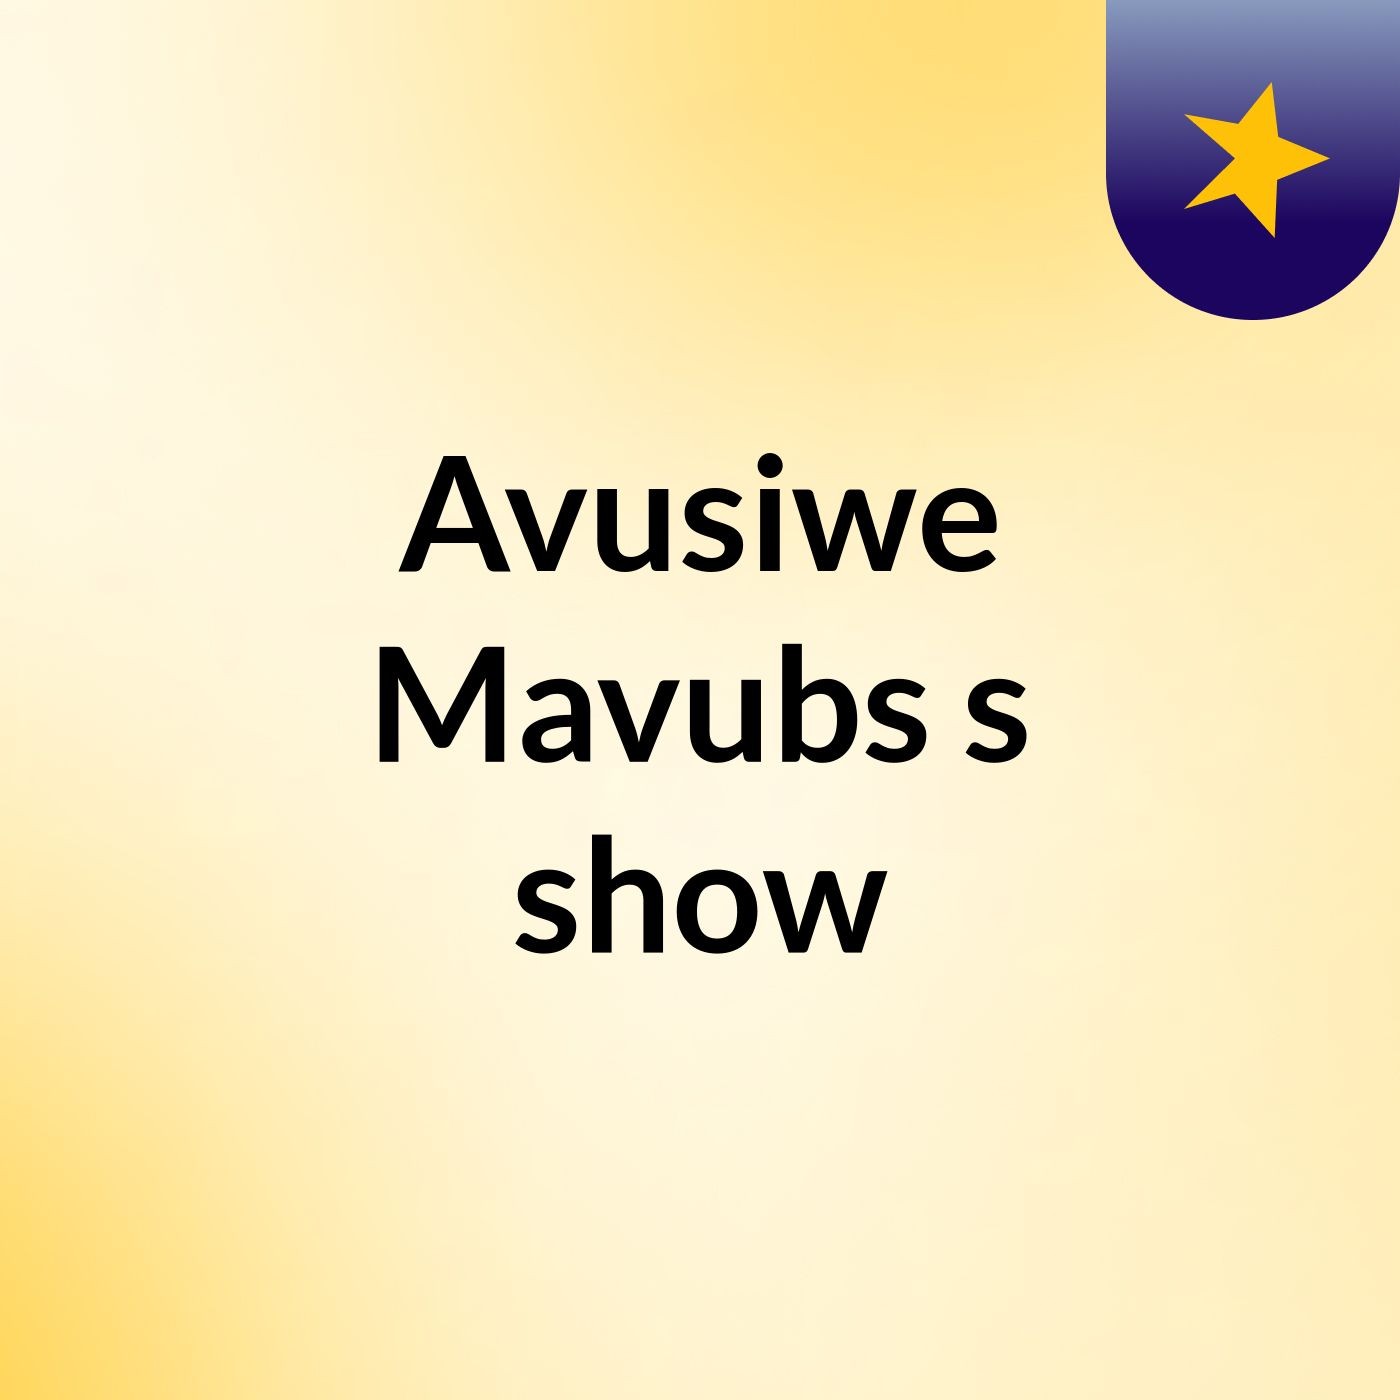 Avusiwe Mavubs's show